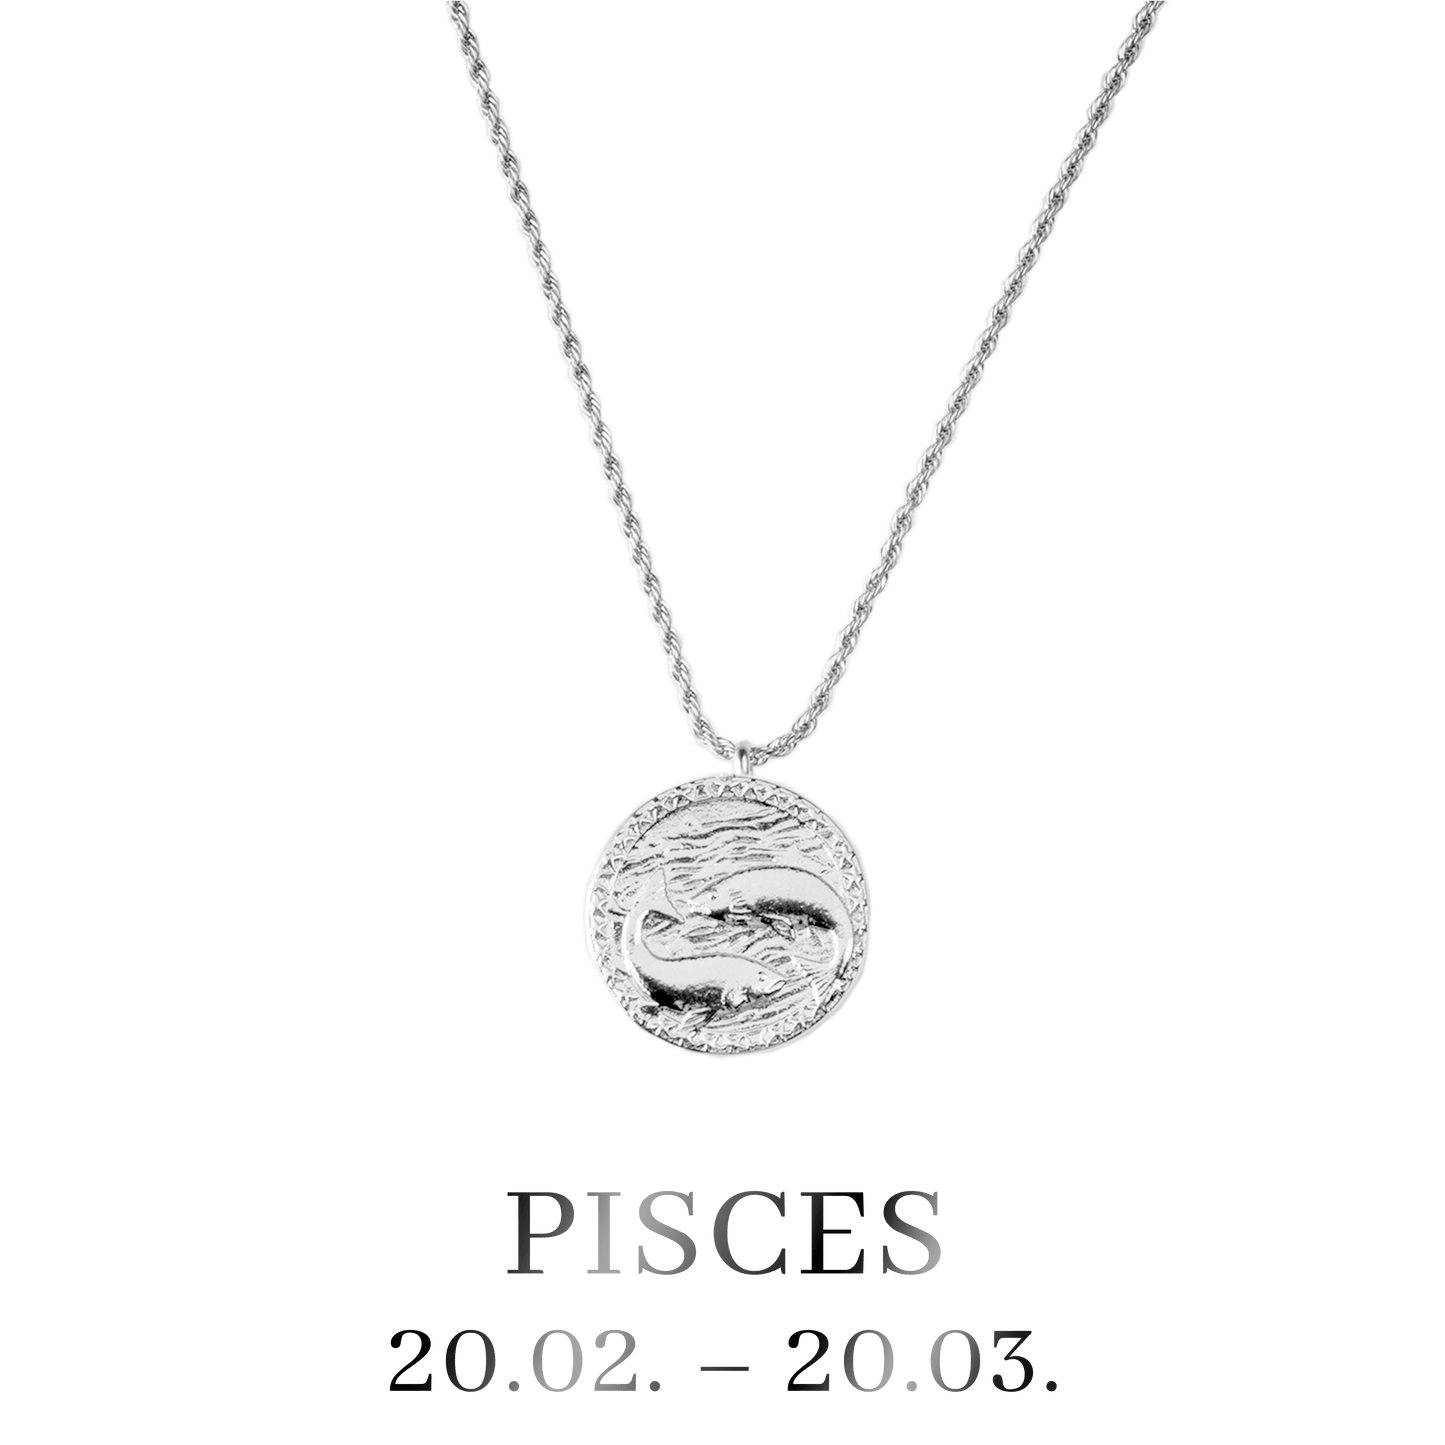 Pisces / Fische Necklace Silber